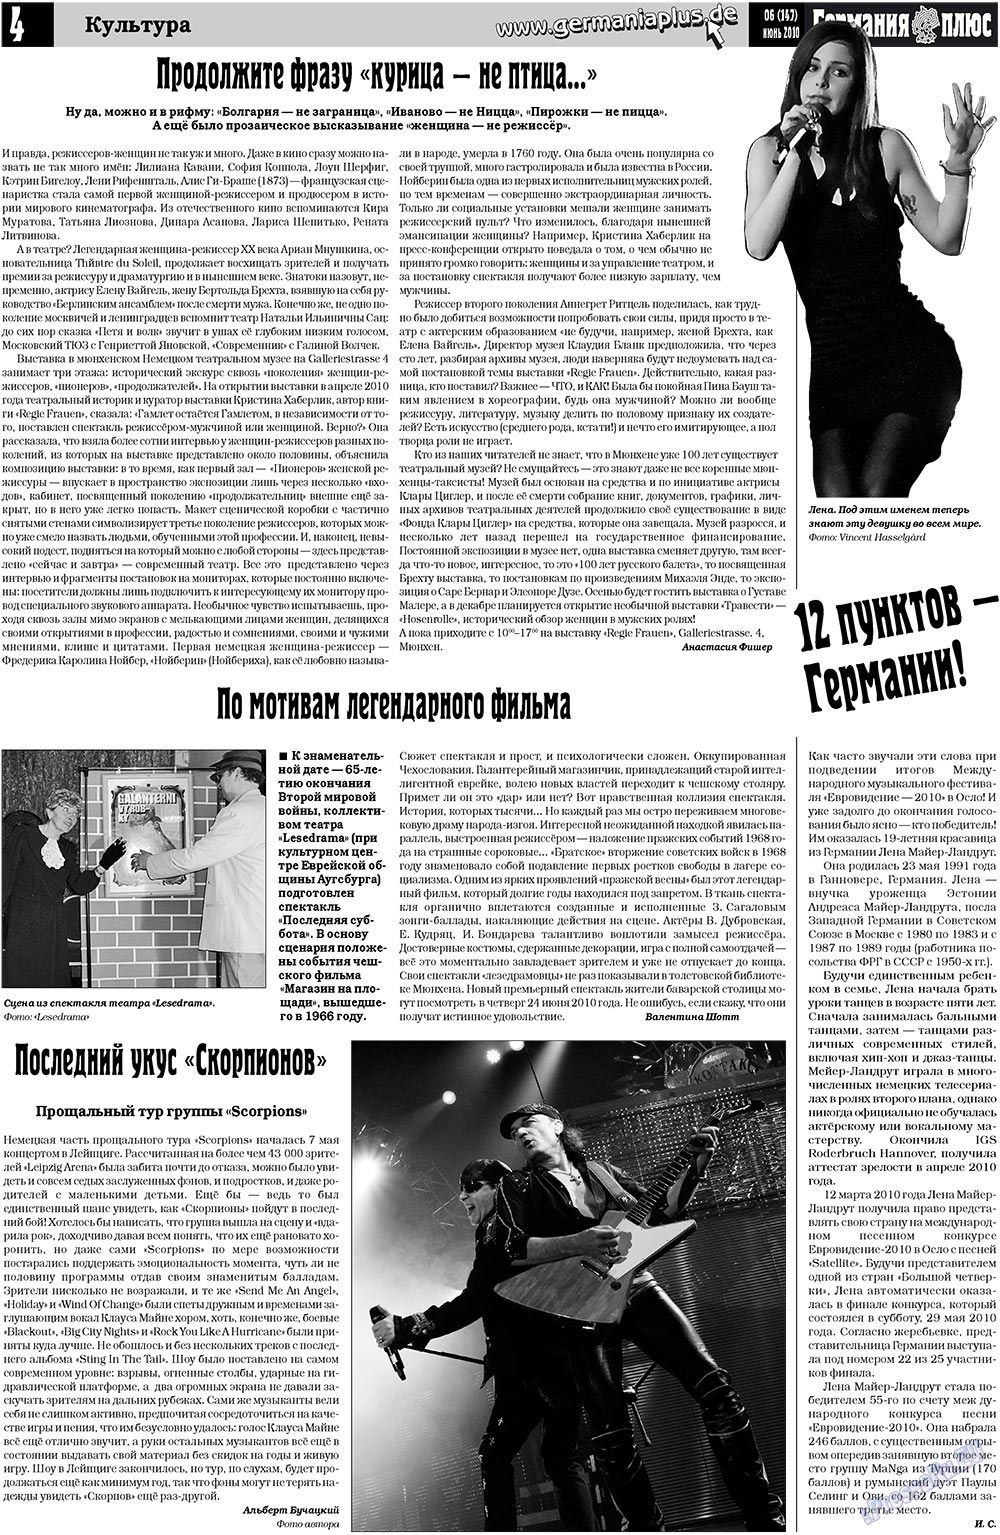 Германия плюс (газета). 2010 год, номер 6, стр. 4